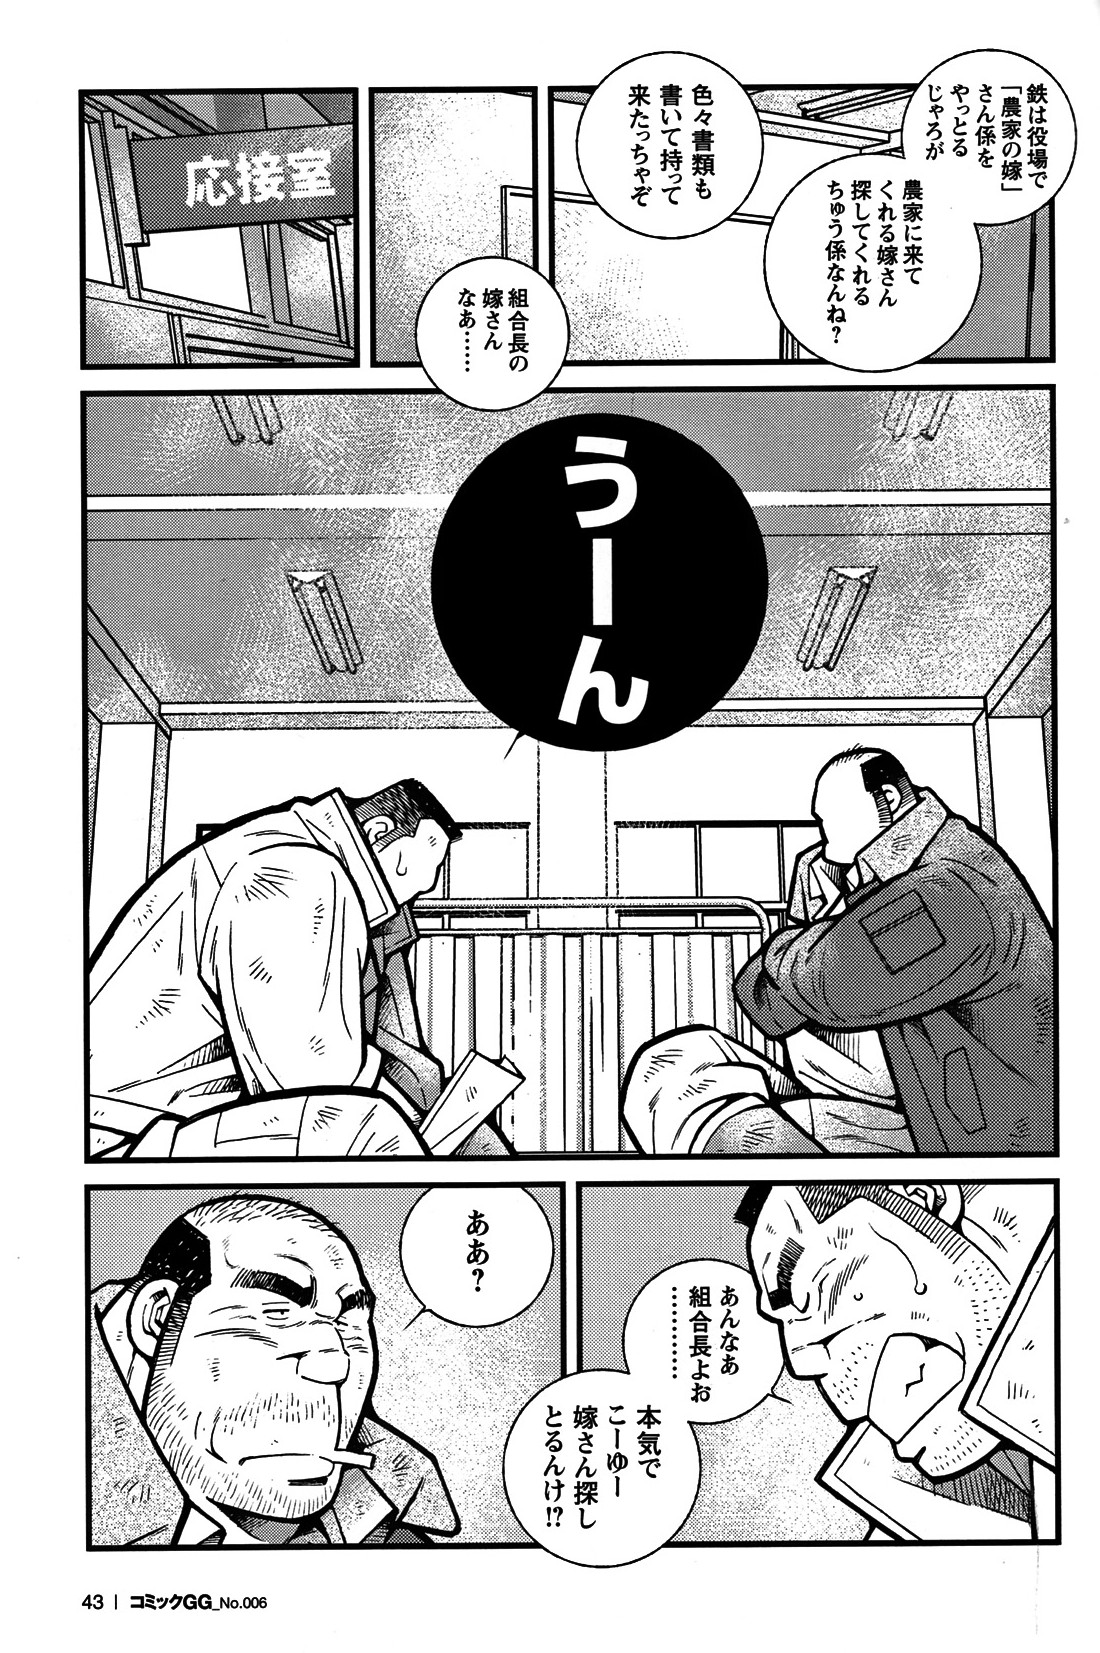 Comic G-men Gaho No. 06 Nikutai Roudousha page 38 full